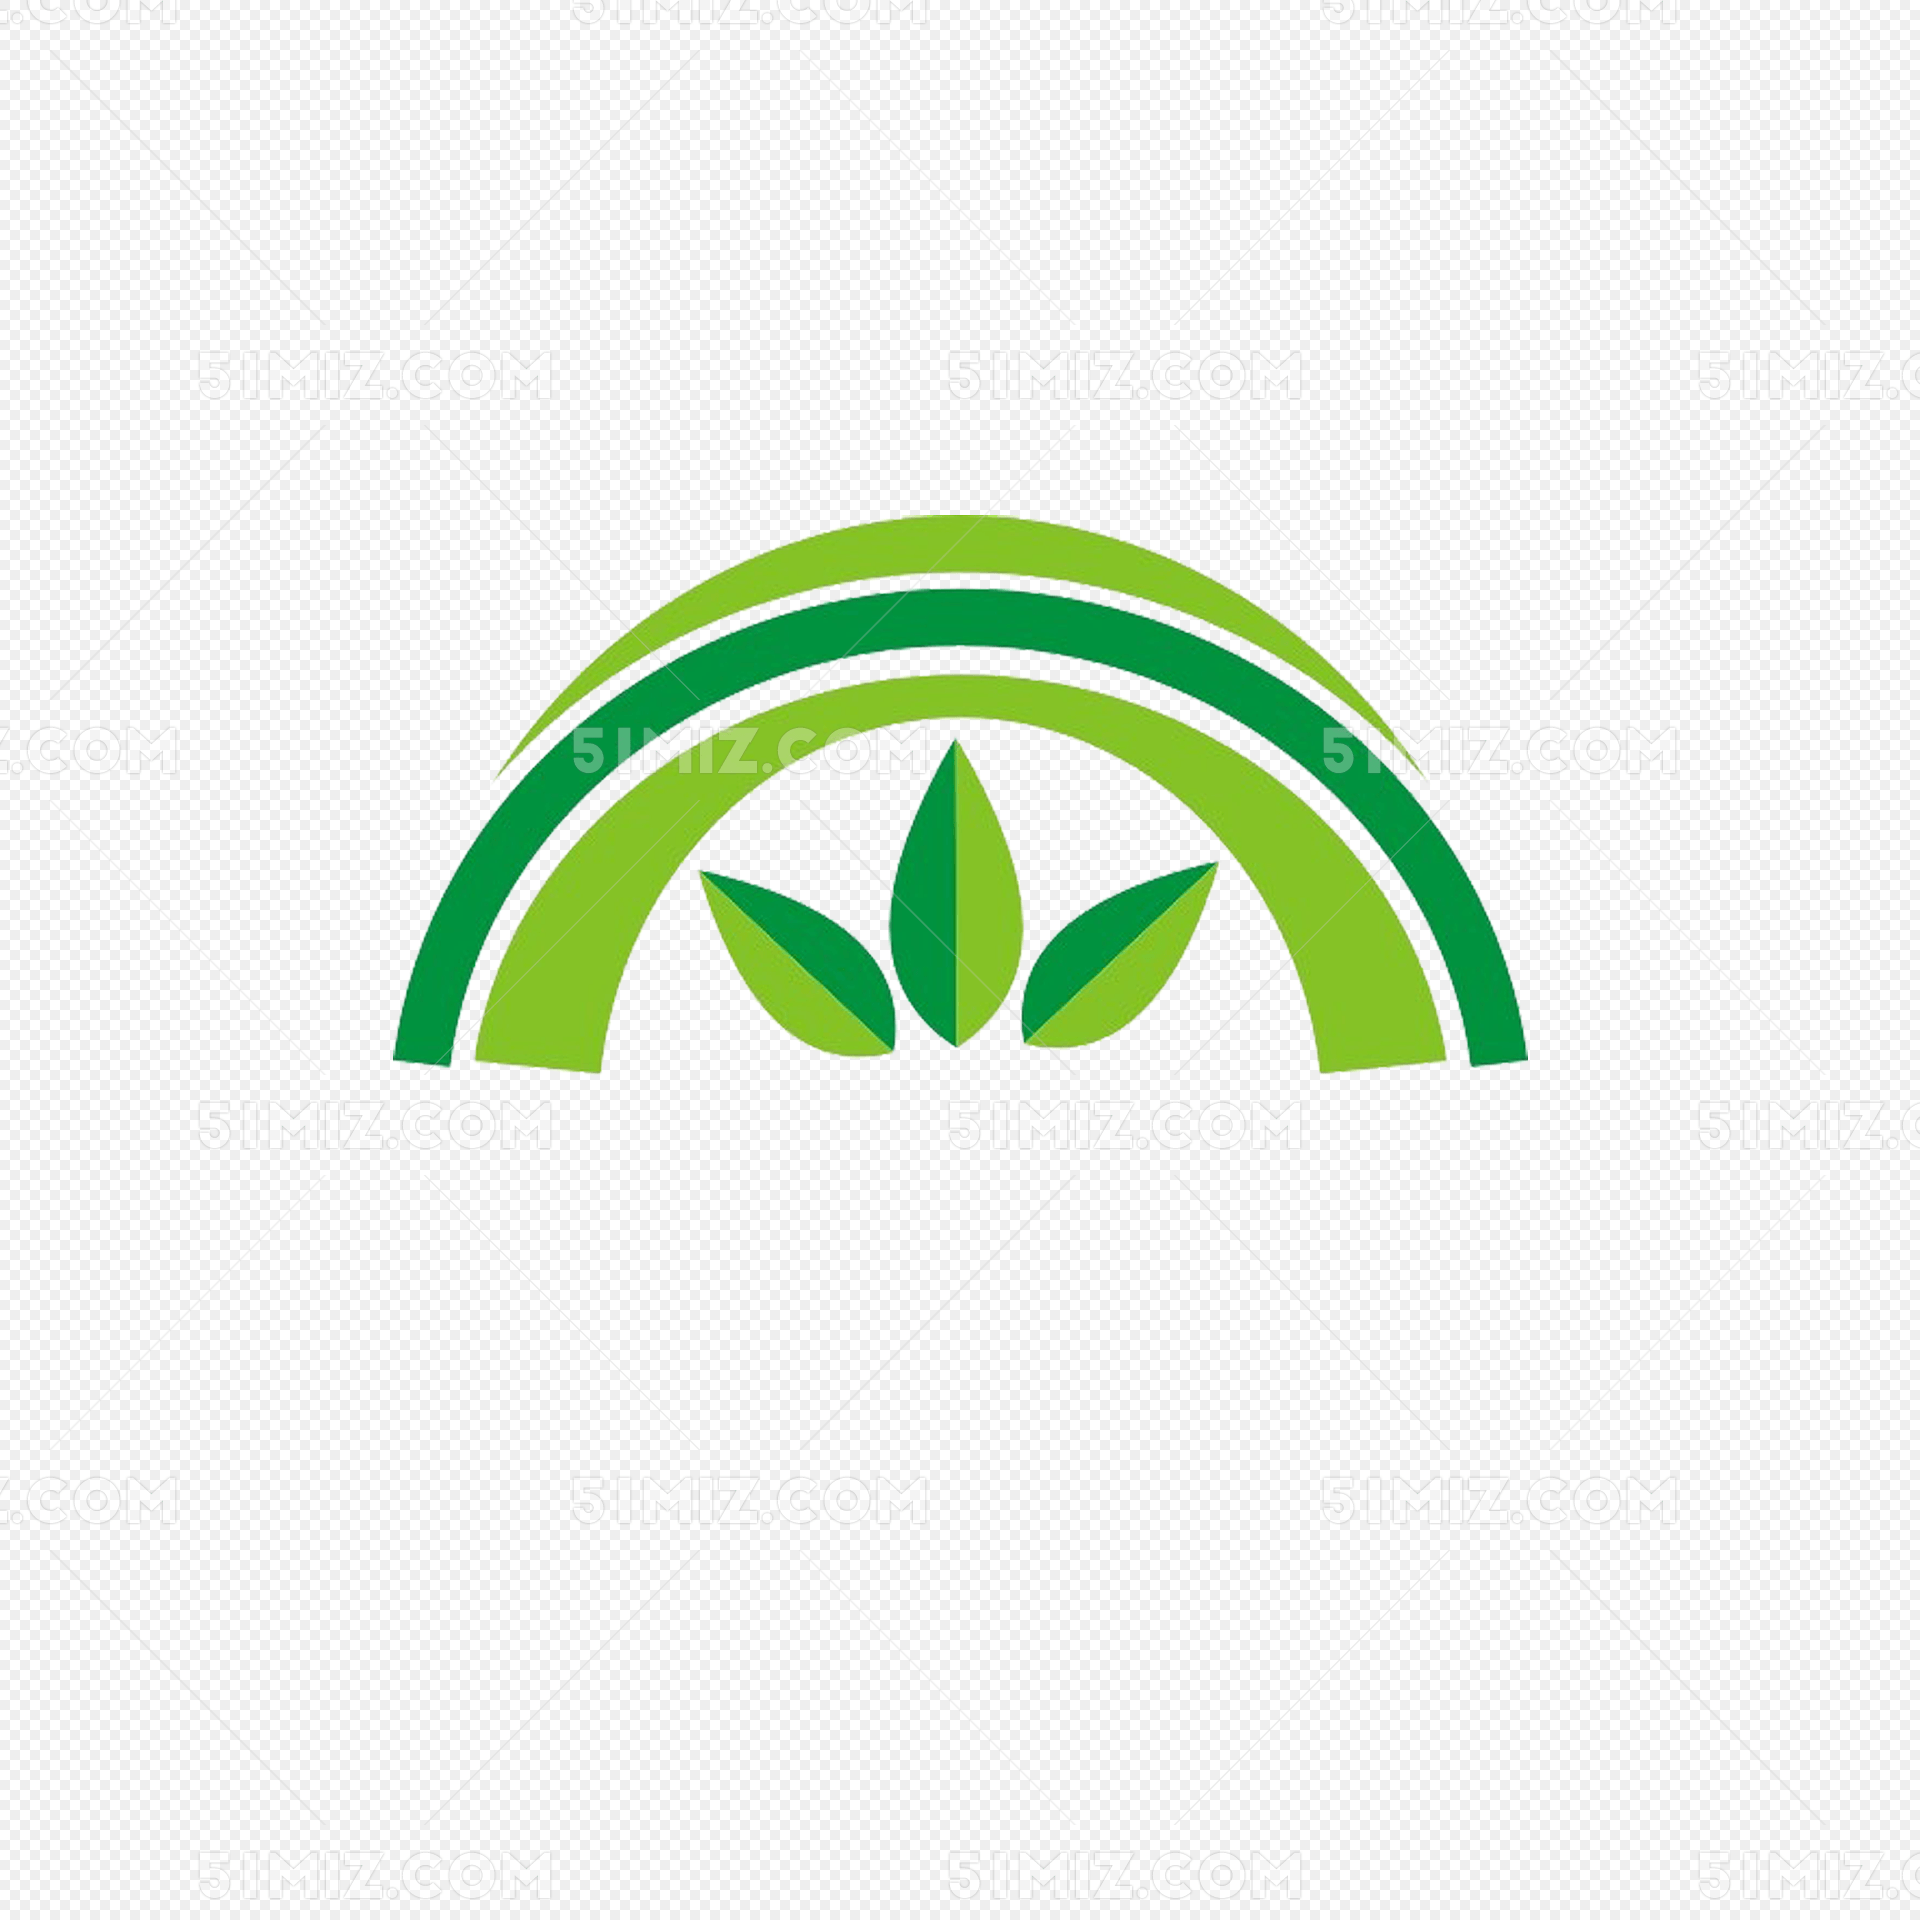 绿色彩虹状绿叶简约园林logo